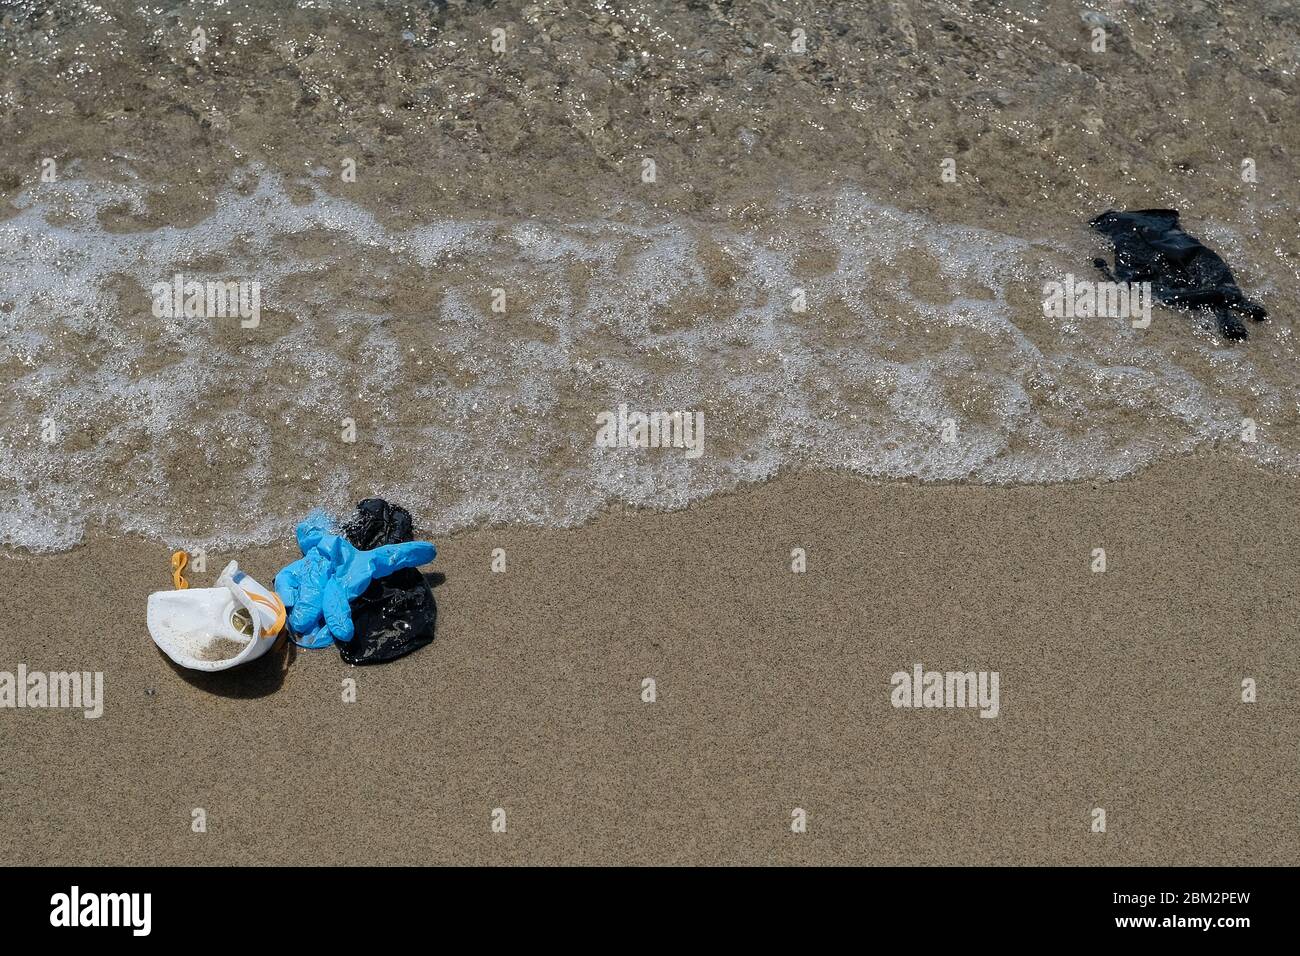 Maschere antivirus protettive e guanti di plastica spazzatura rifiuti sulla spiaggia sabbiosa, malattia da inquinamento da cocvidi coronavirus Foto Stock